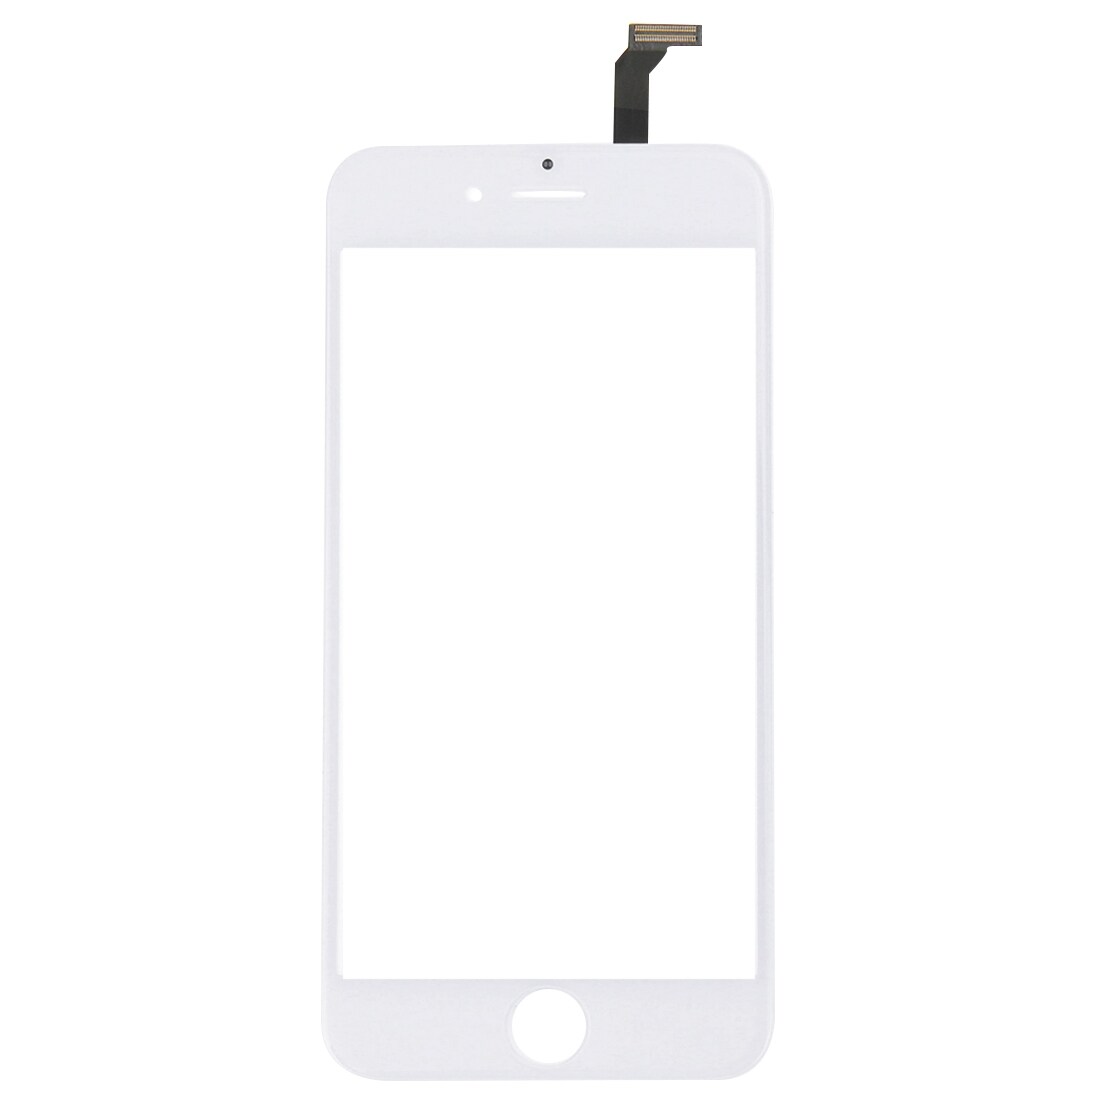 Lasi, Touch laite & Flex-kaapeli iPhone 6 - Valkoinen väri